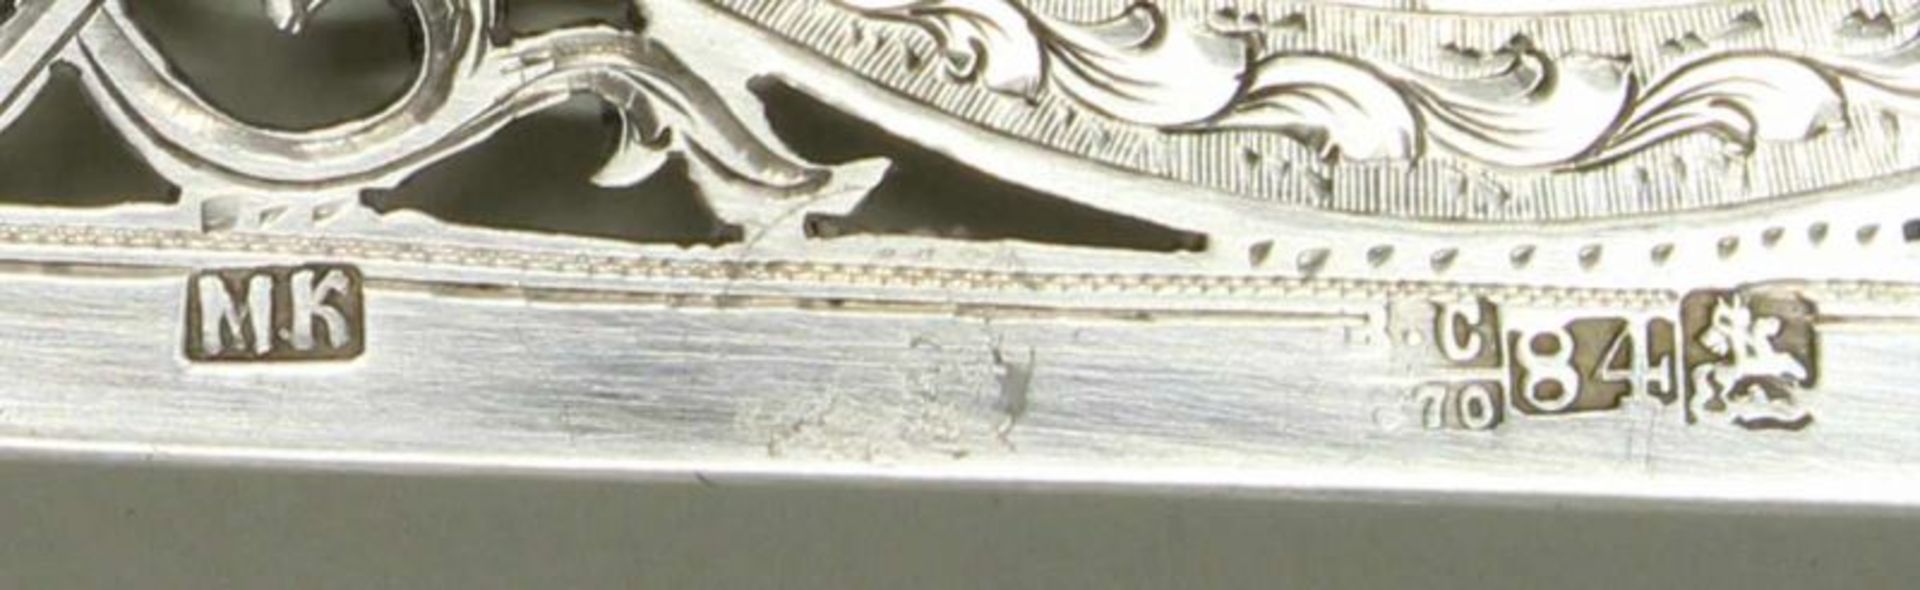 Fischheber, Silber 84er, Moskau, 1870, Stadtmarke, Beschaumarke, Meistermarke M.K, Laffe à jour - Bild 2 aus 3